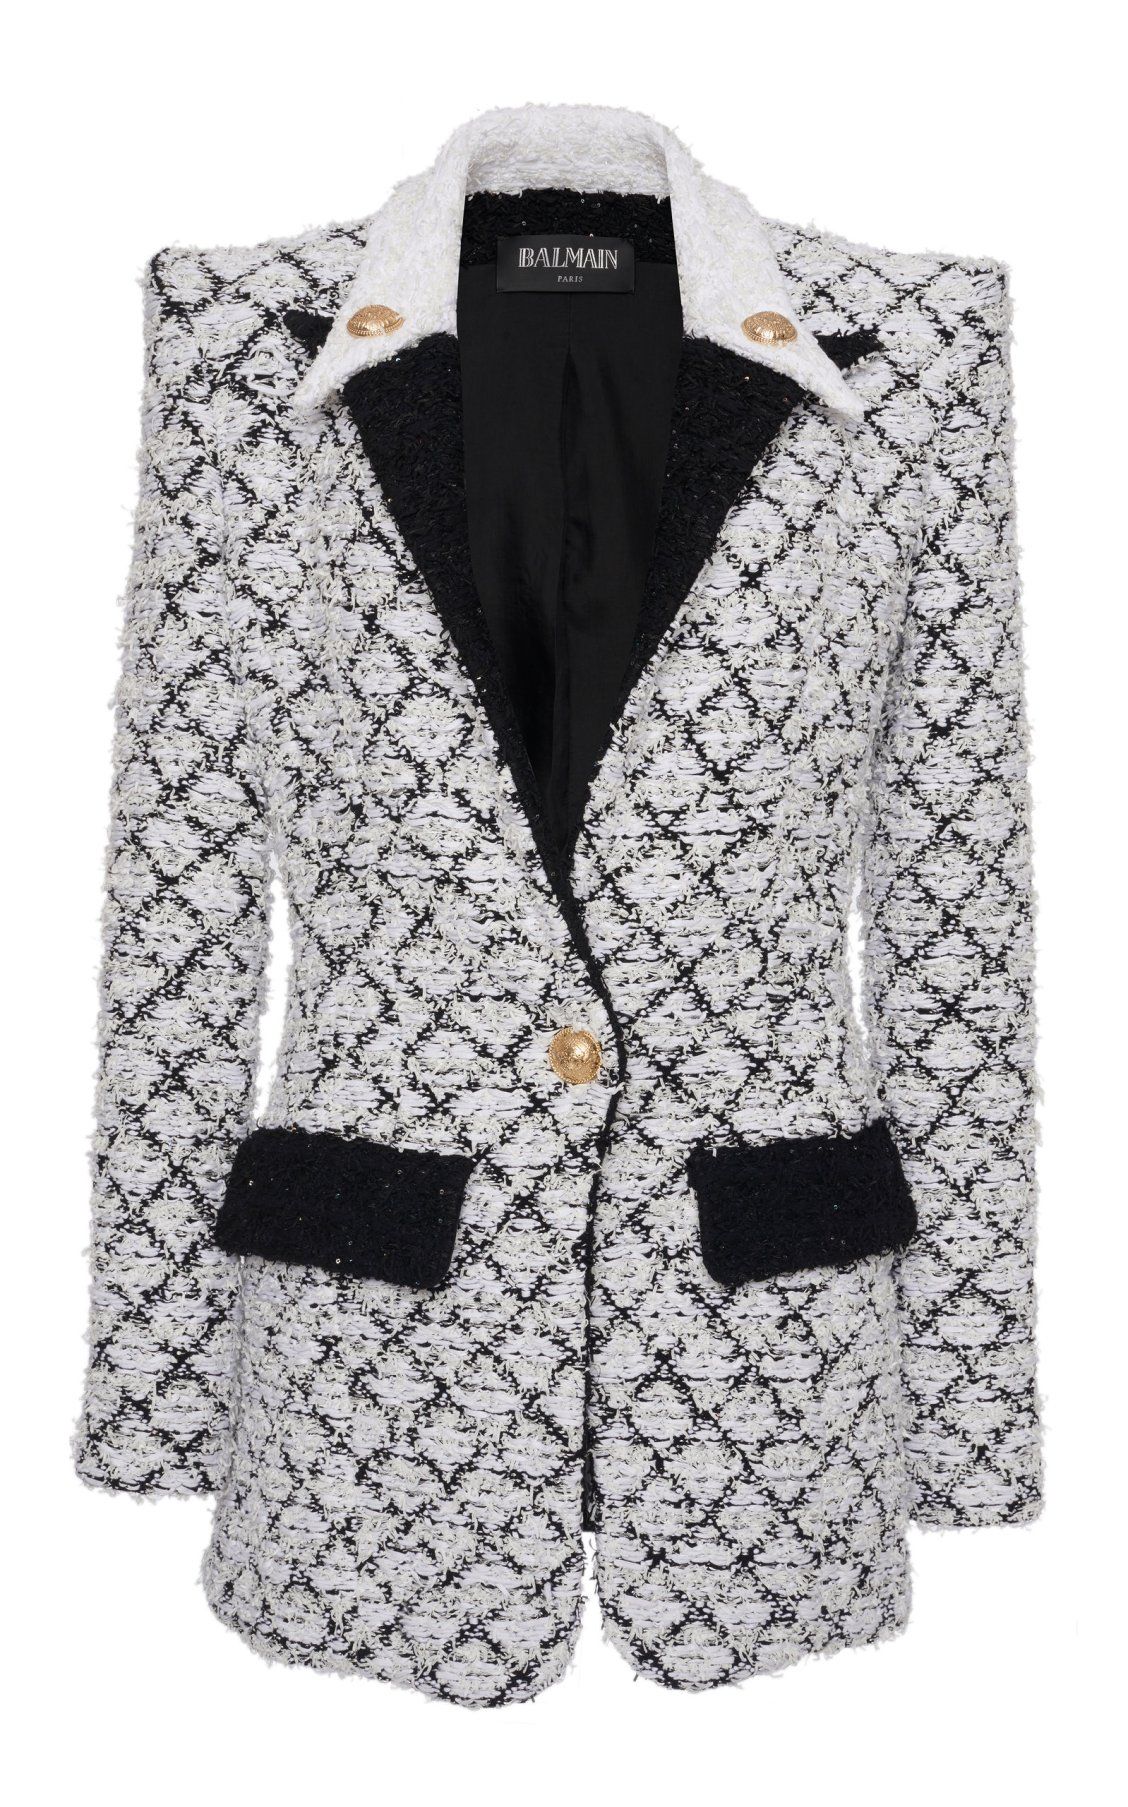 Diamond Monochromatic Tweed Jacket By Balmain Pf19 - Formal Wear , HD Wallpaper & Backgrounds